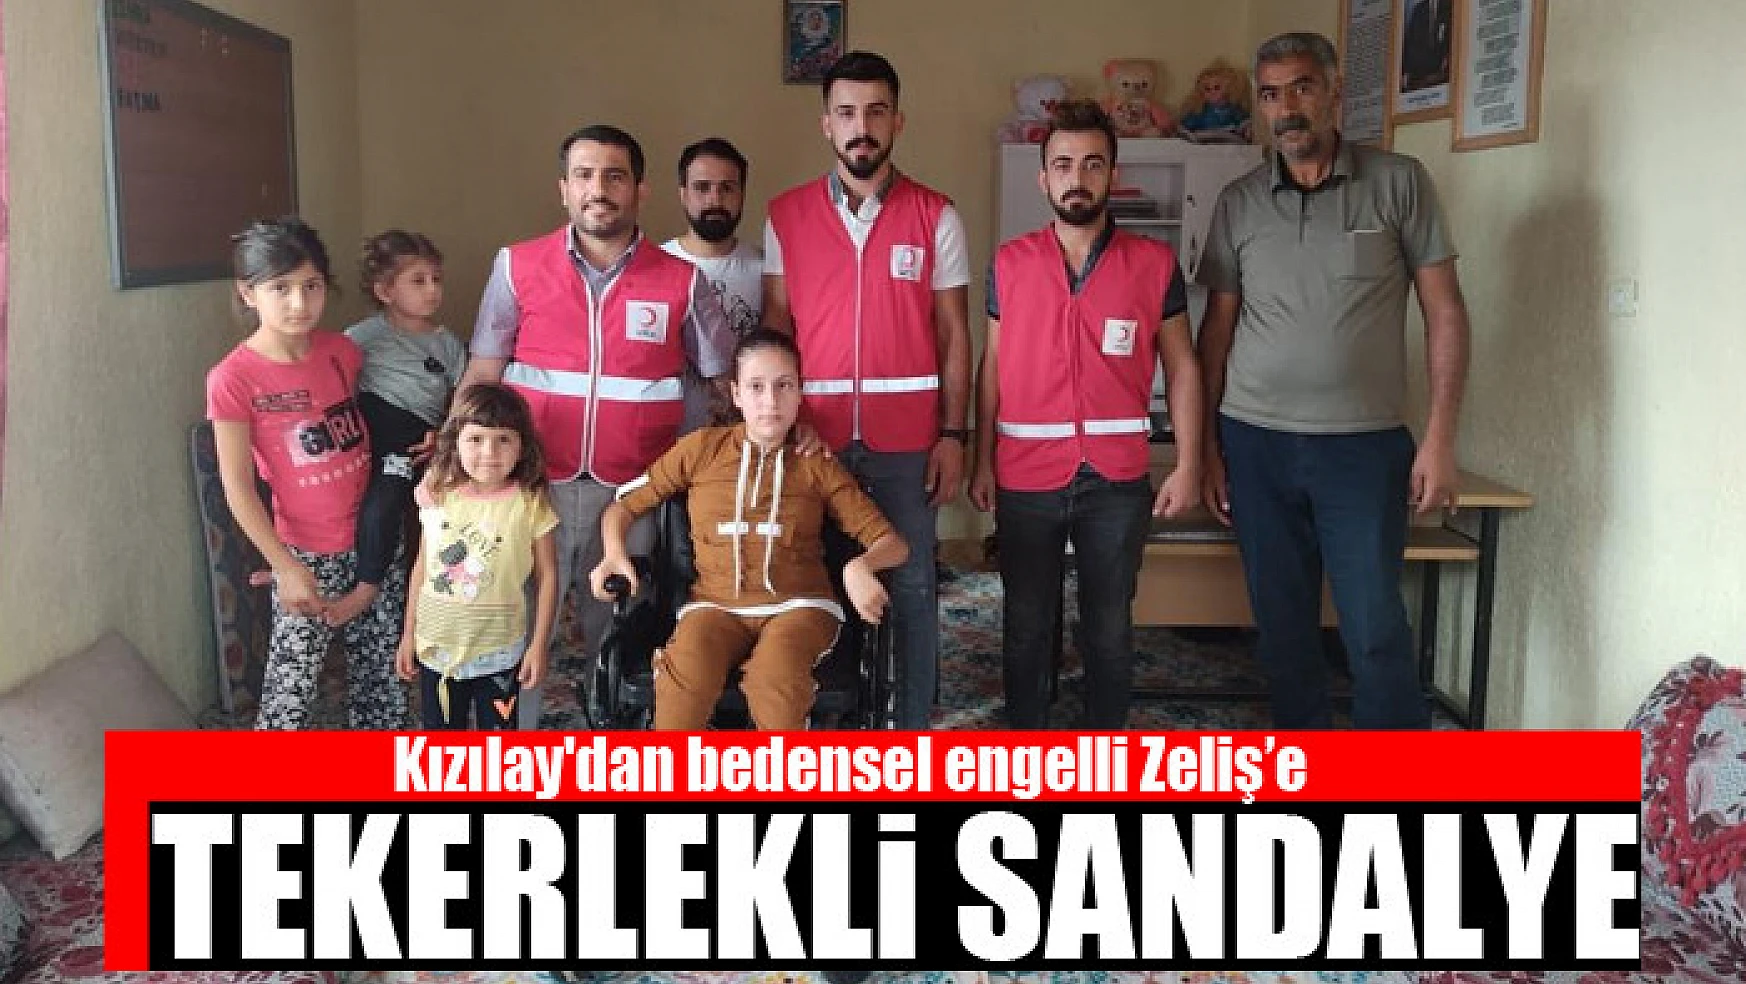 Kızılay'dan bedensel engelli Zeliş'e tekerlekli sandalye